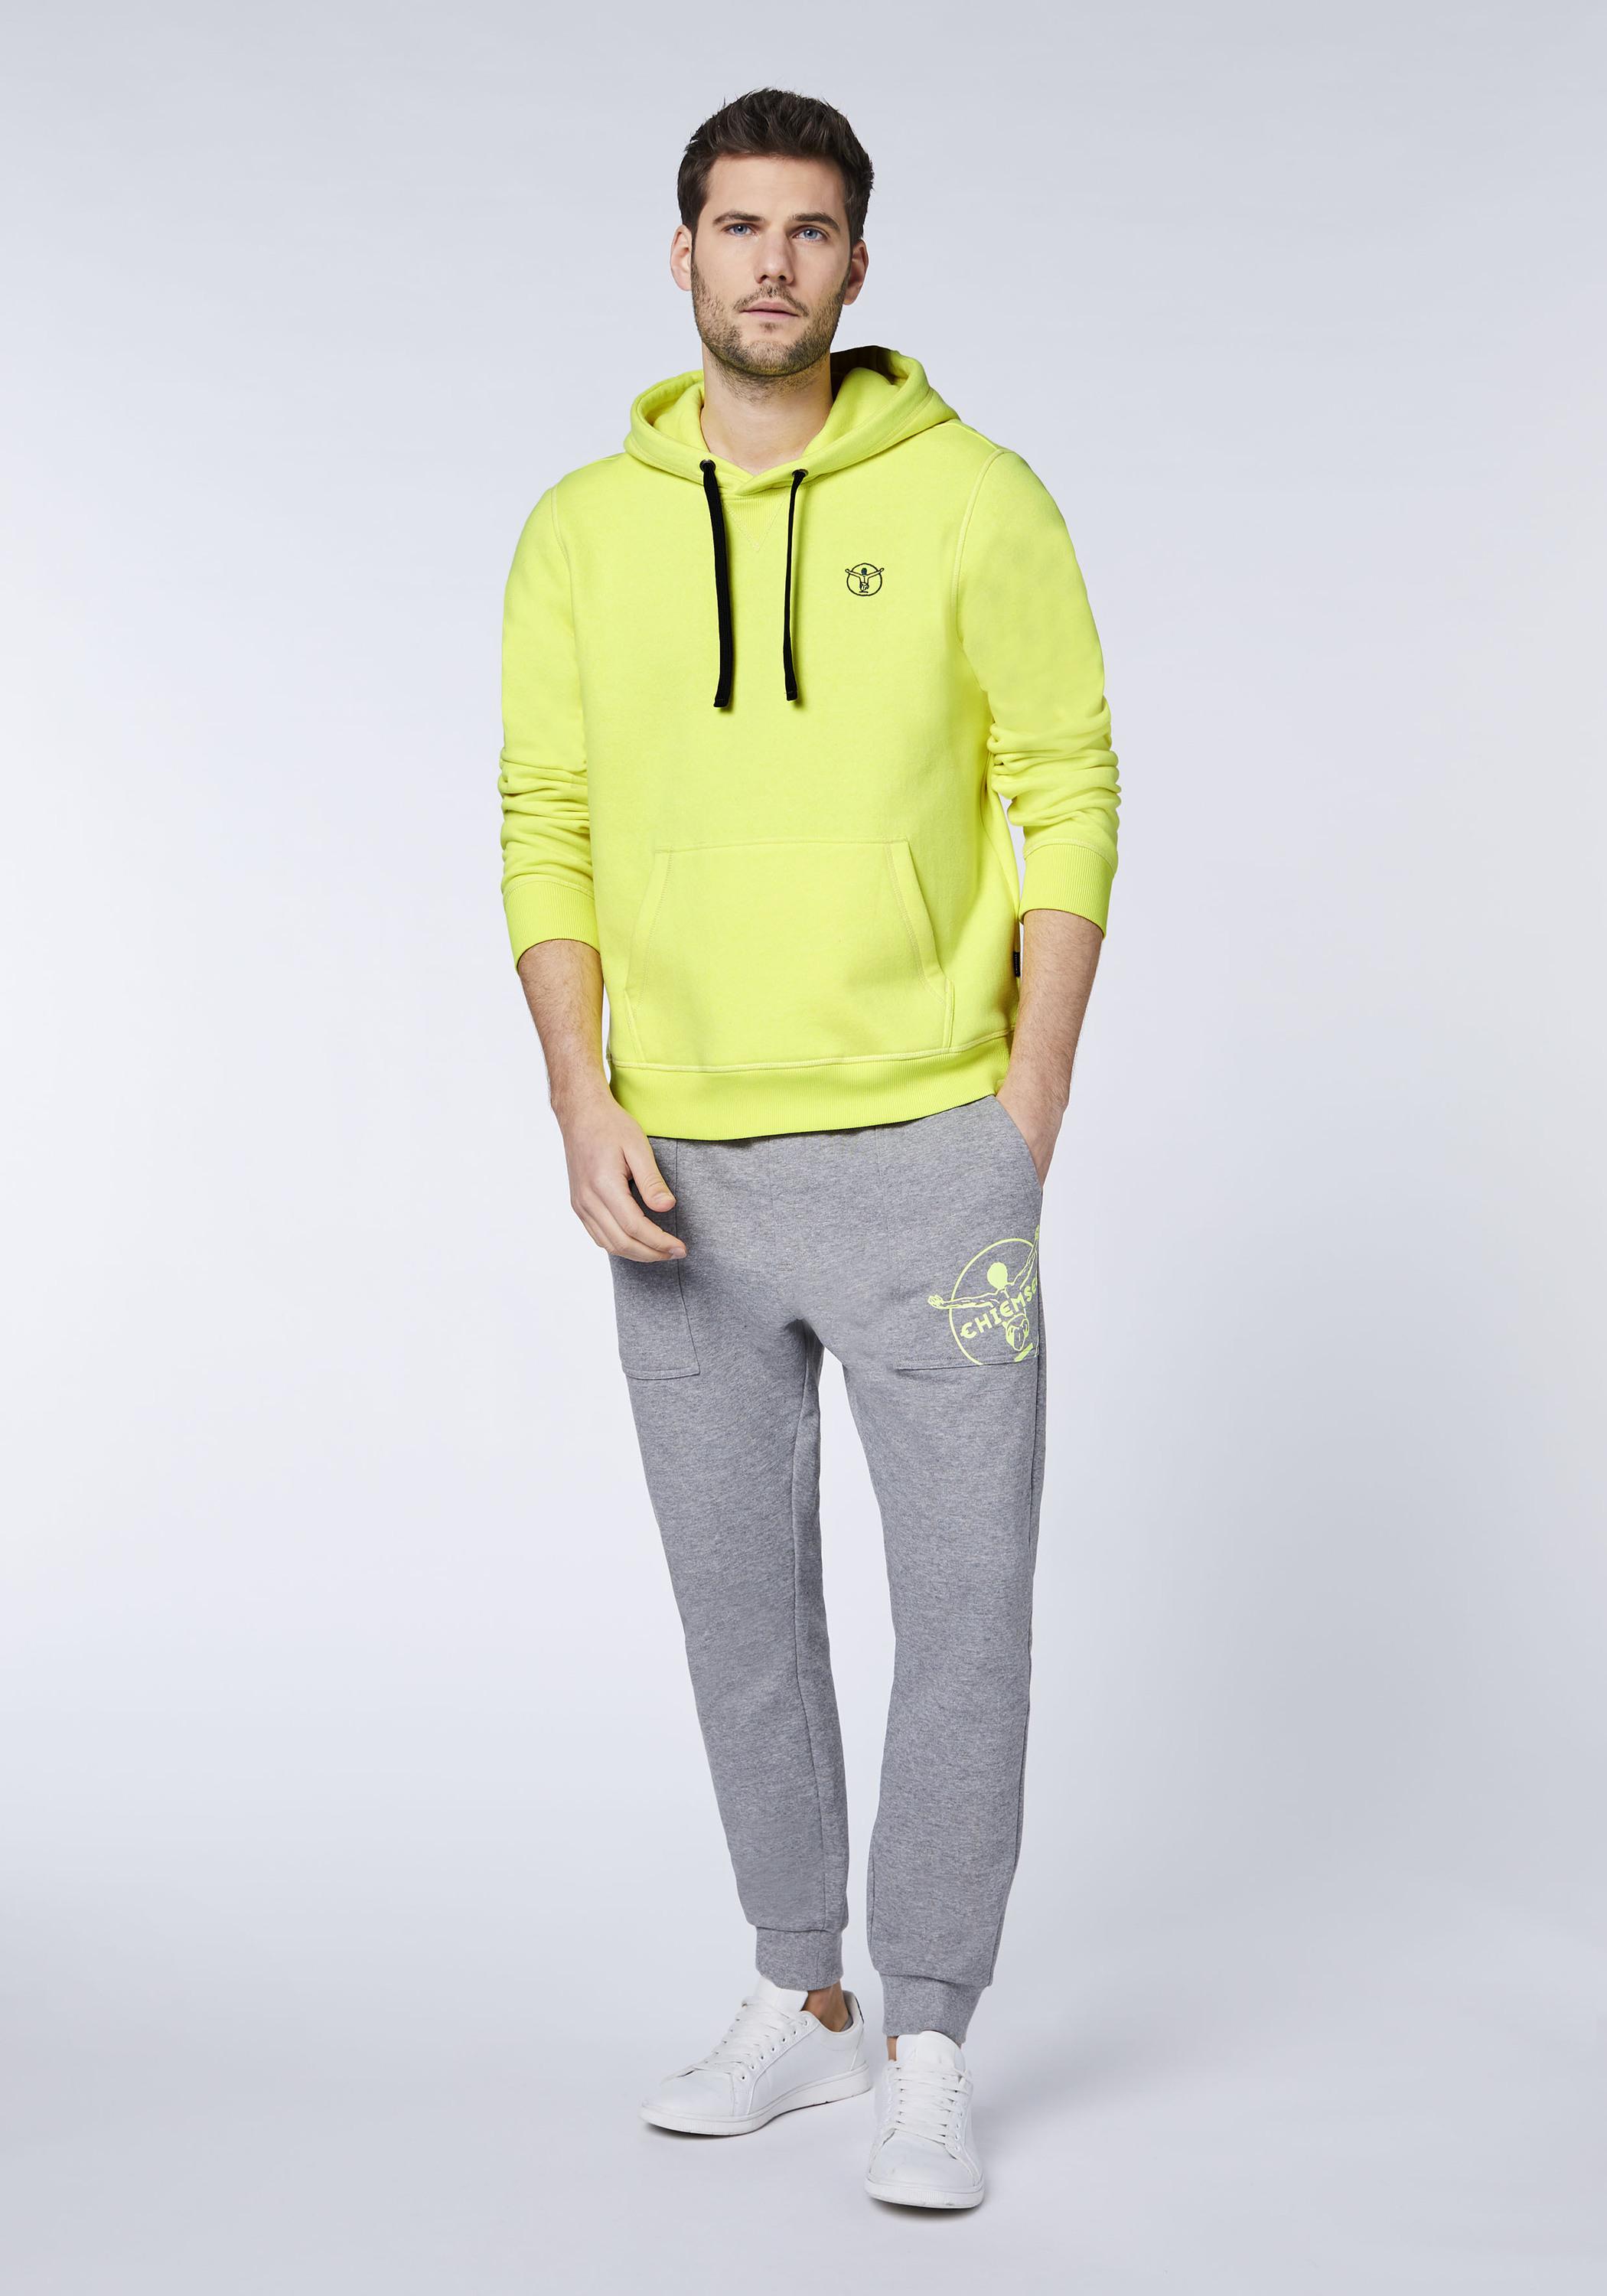 Herren Shop Kapuzensweatshirt Safety SportScheck kaufen Sweatshirt Online Yellow Chiemsee von im